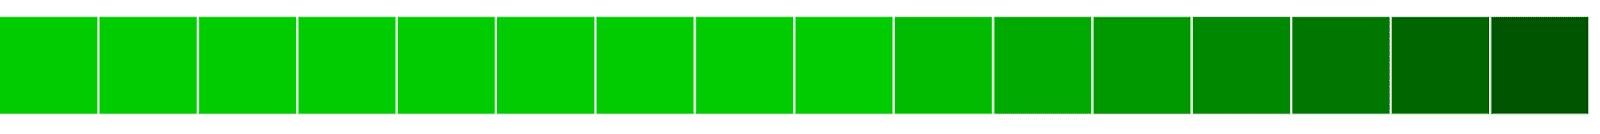 Allineamento orizzontale di blocchi verdi da chiaro a scuro.